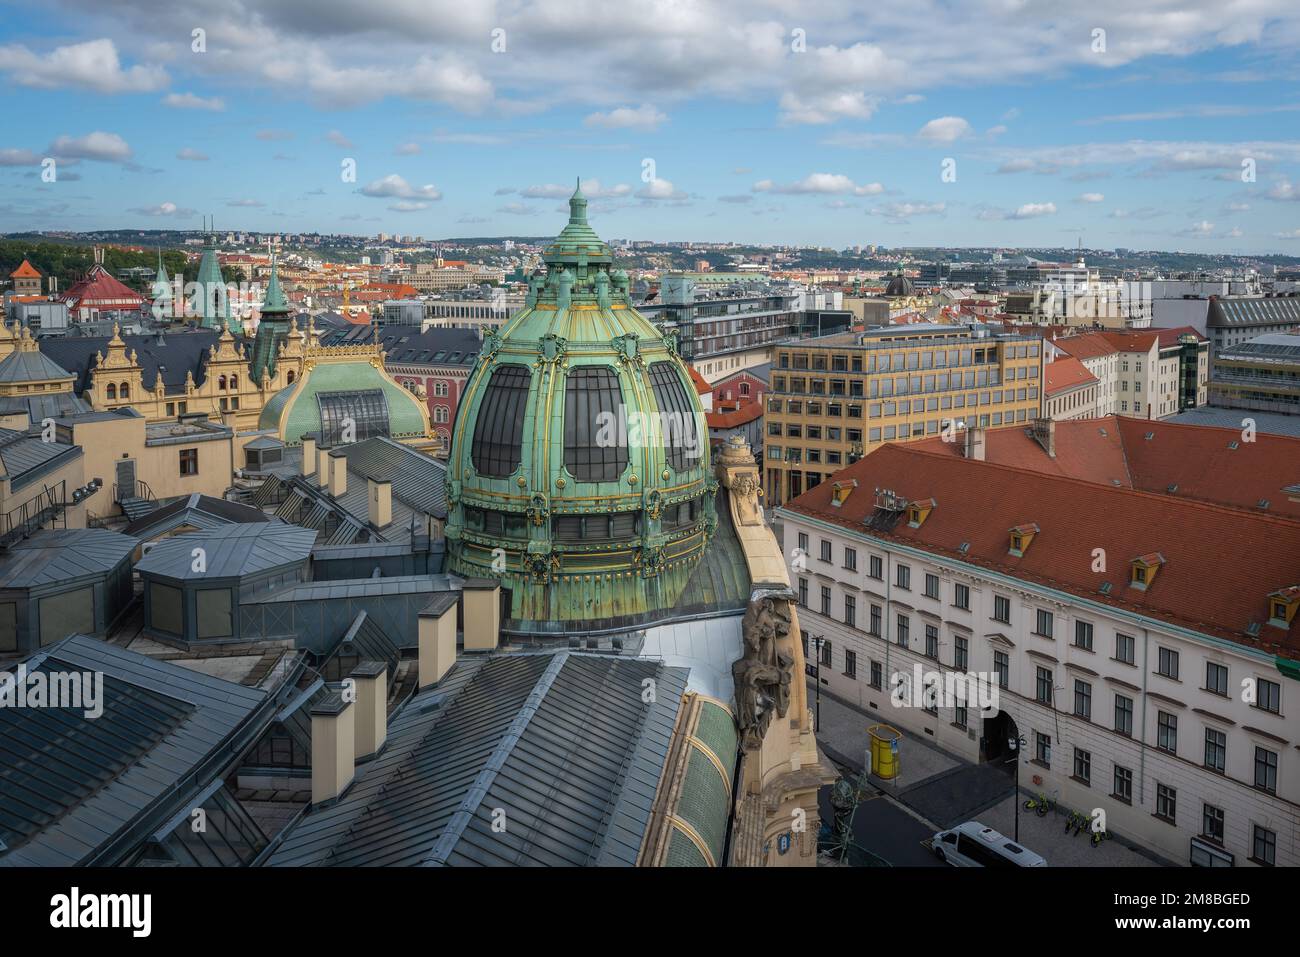 Blick aus der Vogelperspektive auf den Platz der Republik (Namesti Republiky) mit dem Dom des Stadthauses - Prag, Tschechische Republik Stockfoto